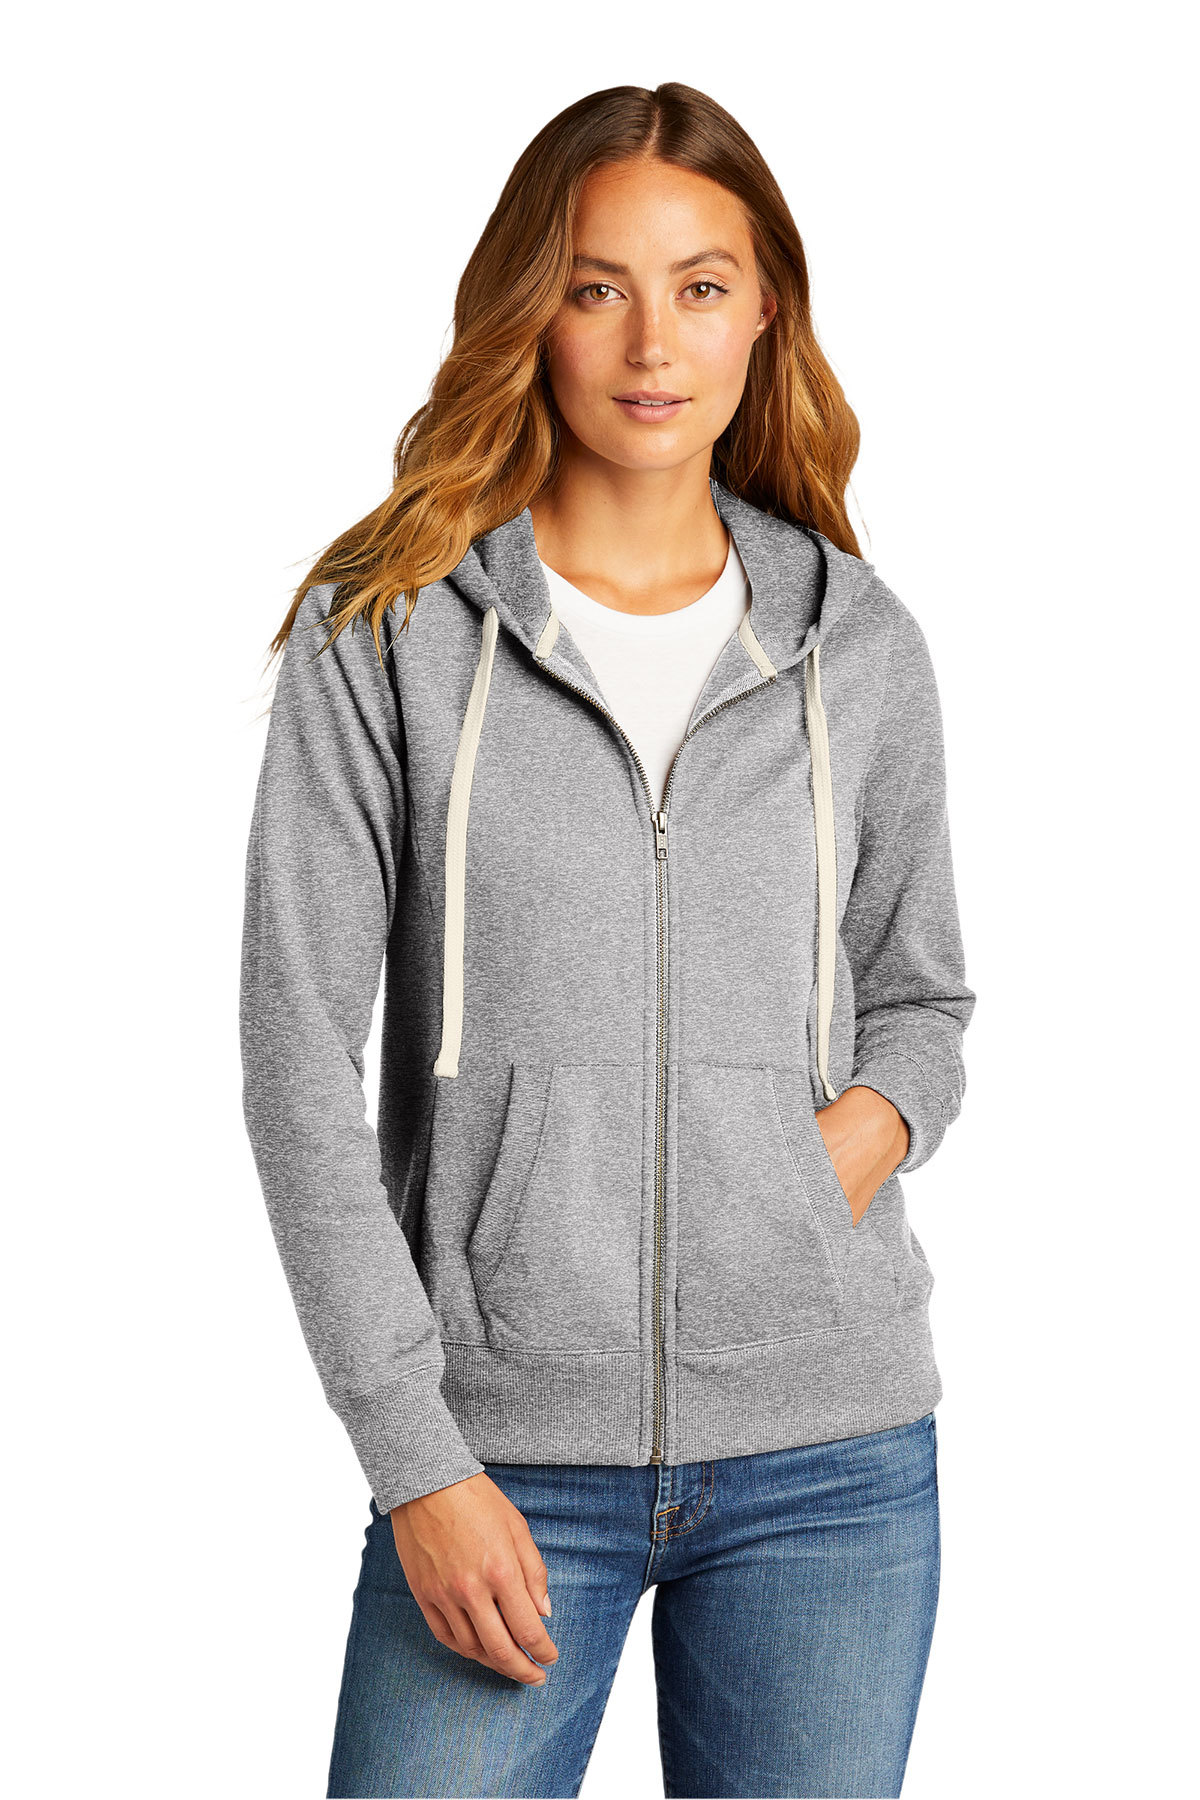 District Women's Re-Fleece Full-Zip Hoodie | Product | Company Casuals